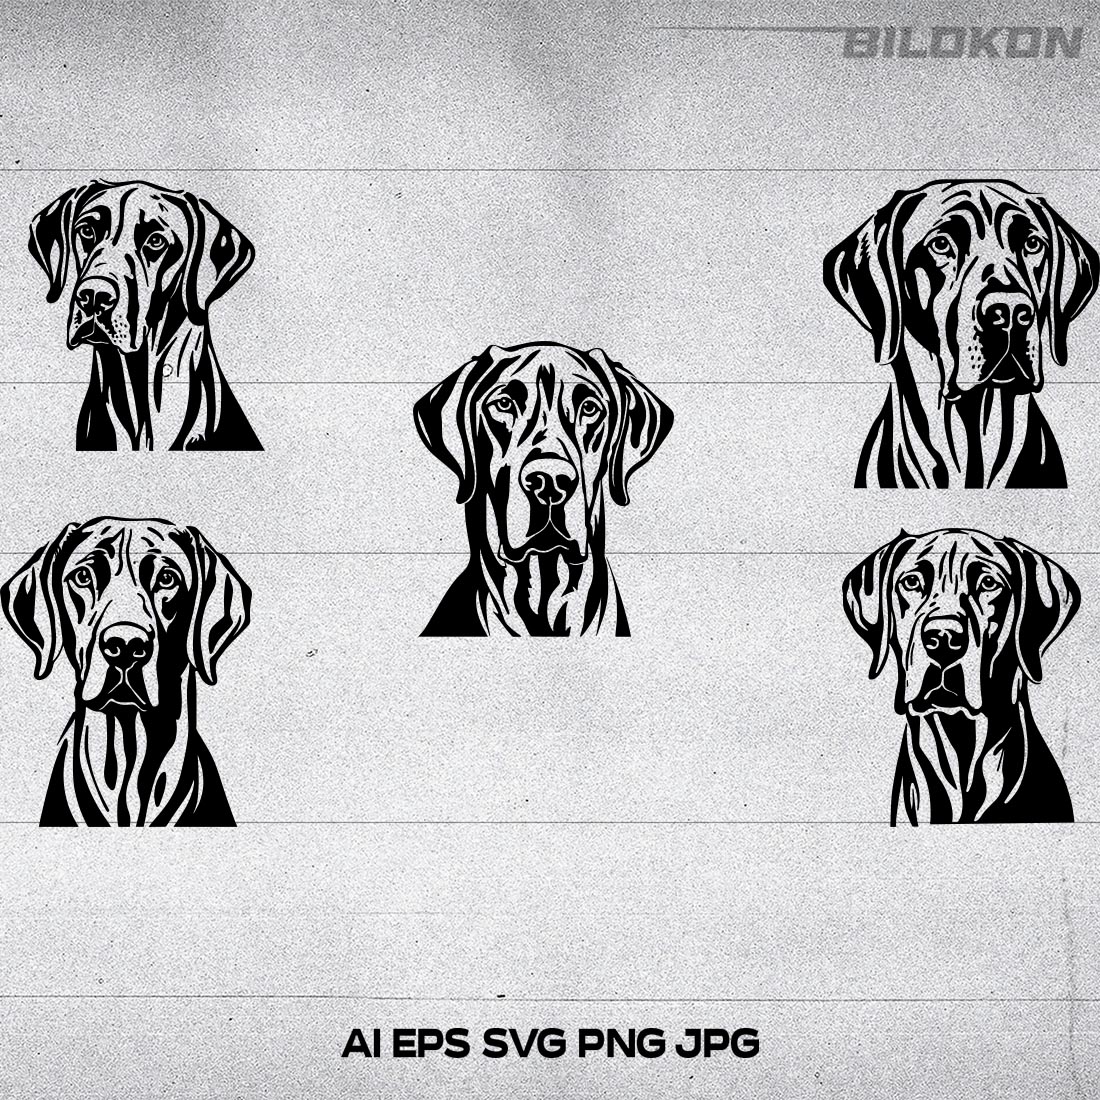 Great Dane dog head, SVG, Vector, Illustration, SVG Bundle cover image.